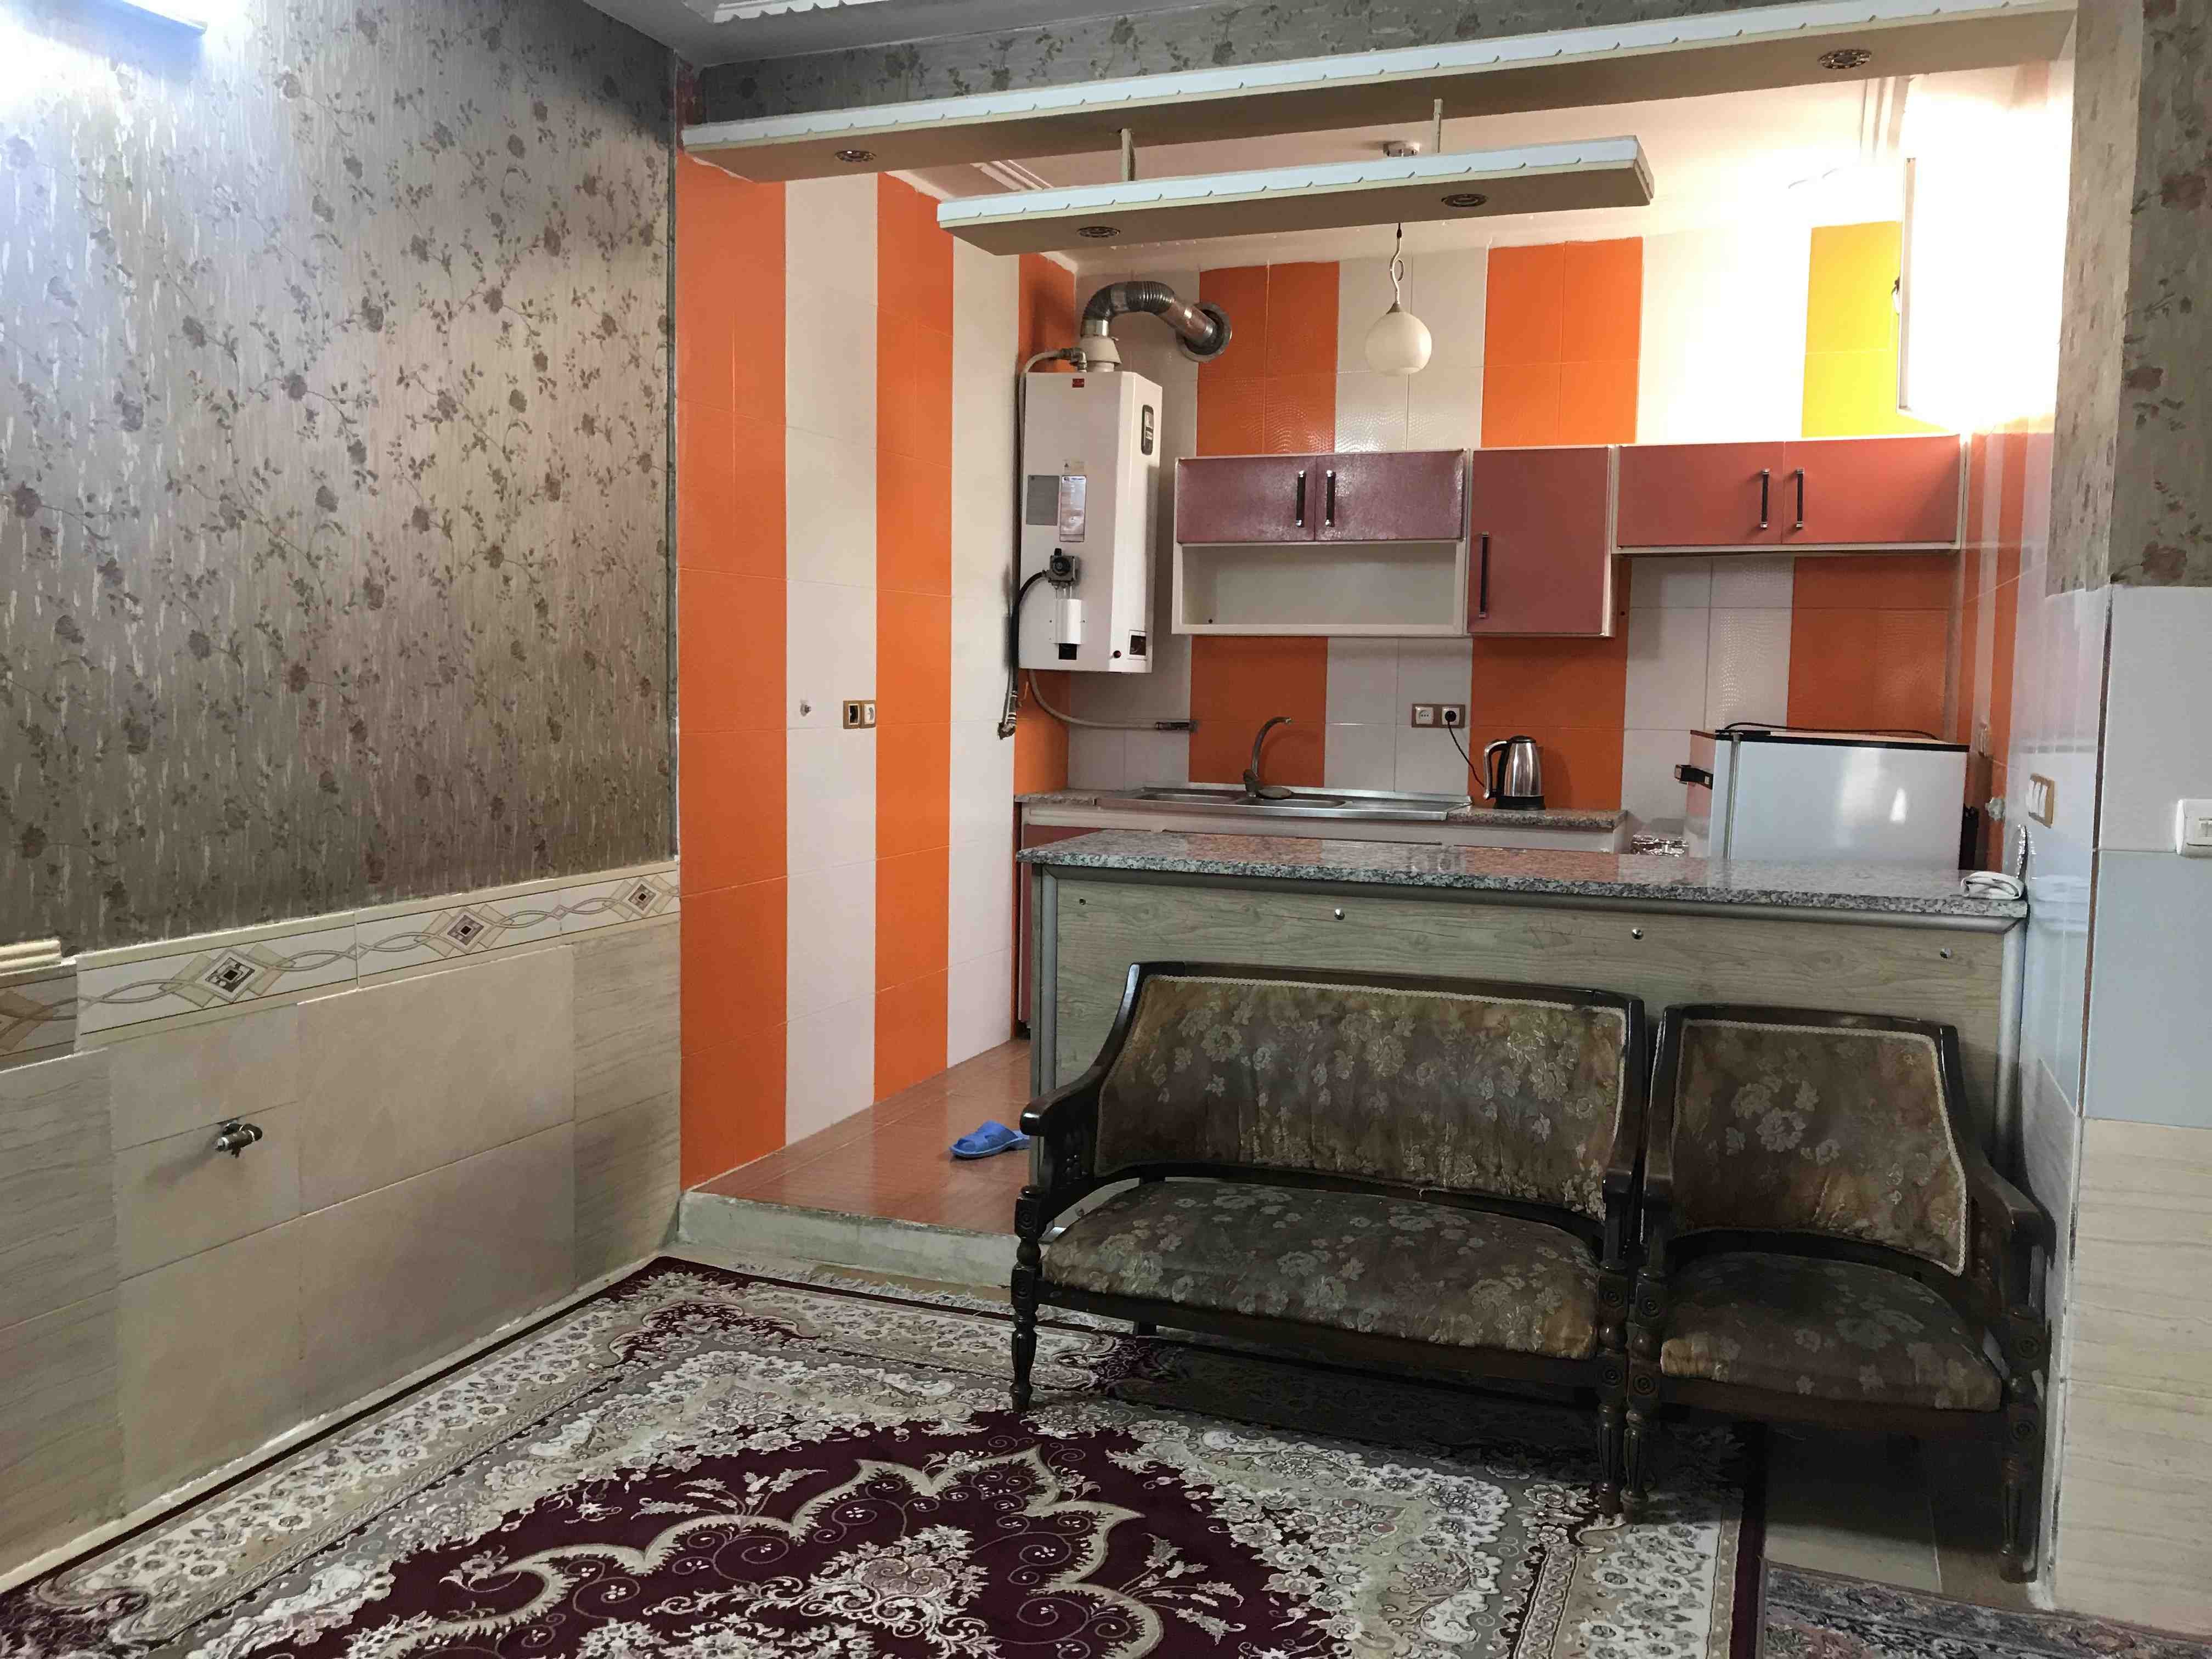 شهری اجاره منزل ویلایی در عدالت شیراز